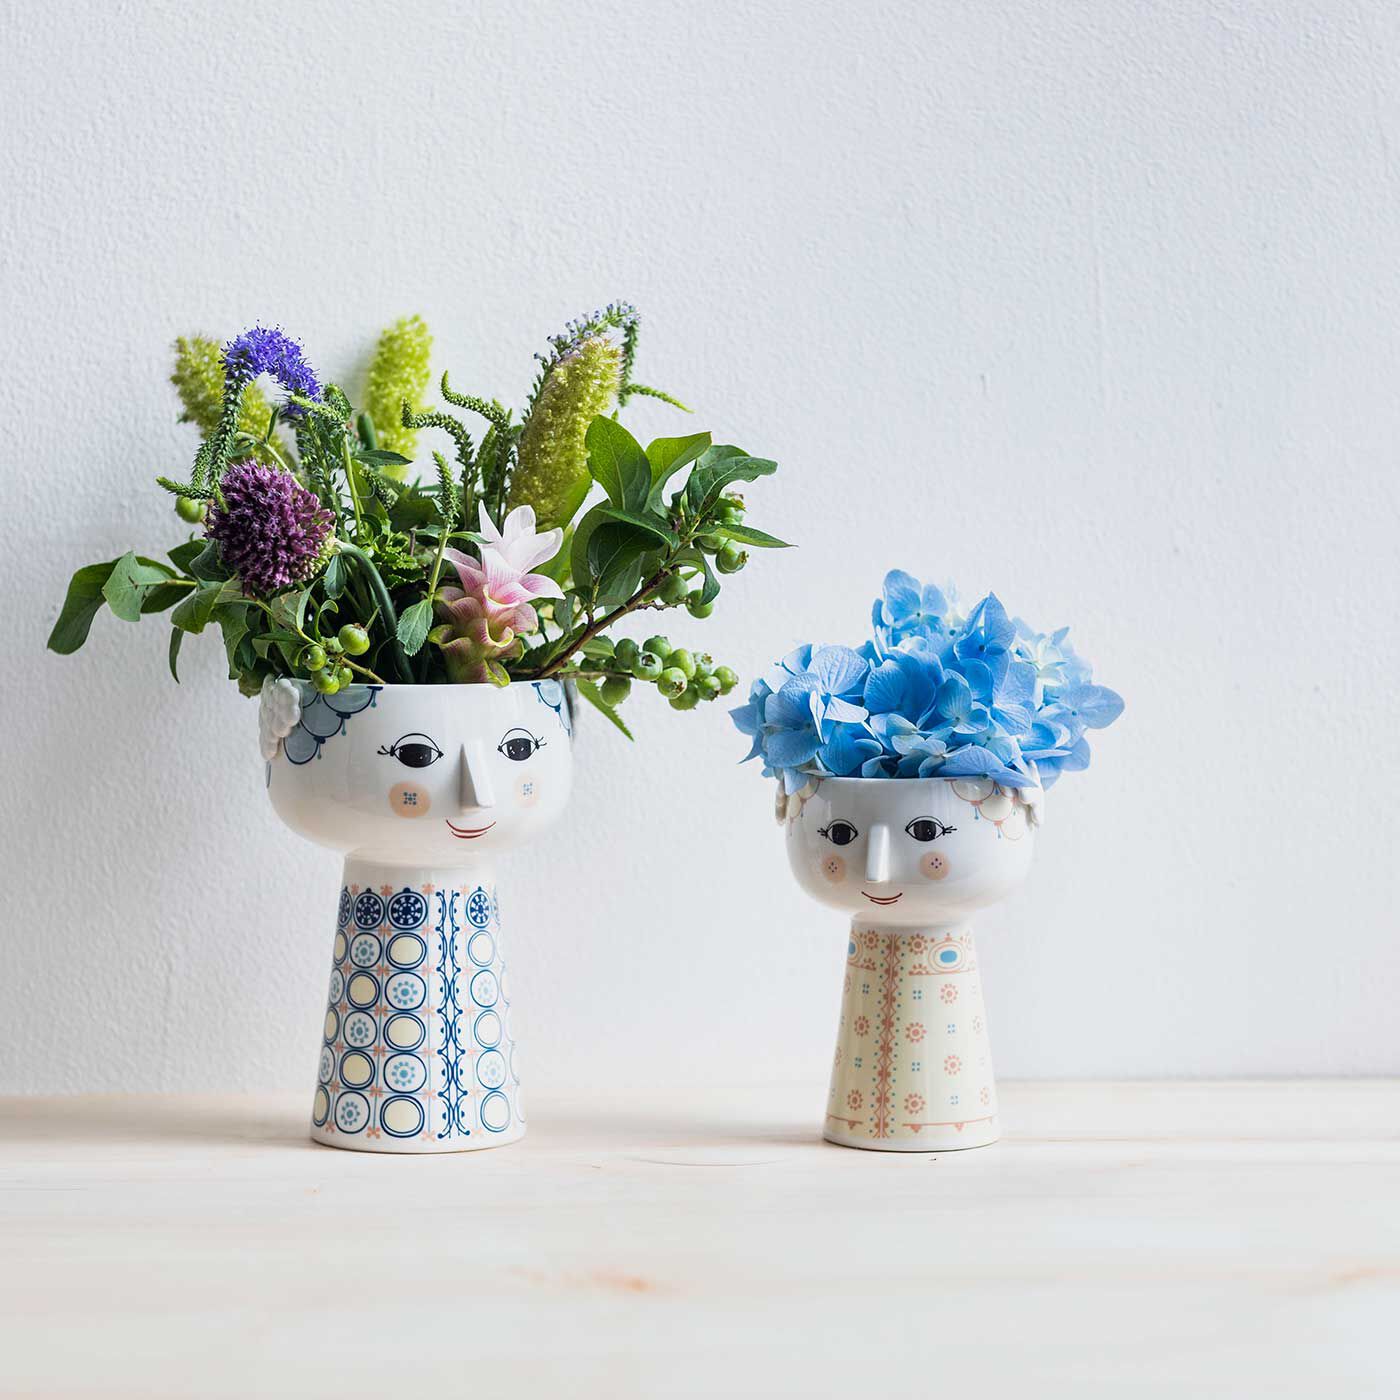 SeeMONO|おしゃれに飾りつける楽しみ BJORN WIINBLAD フラワーベース Eva [BLUE]|穴は下まで続いているので、背の高いお花も飾れます。